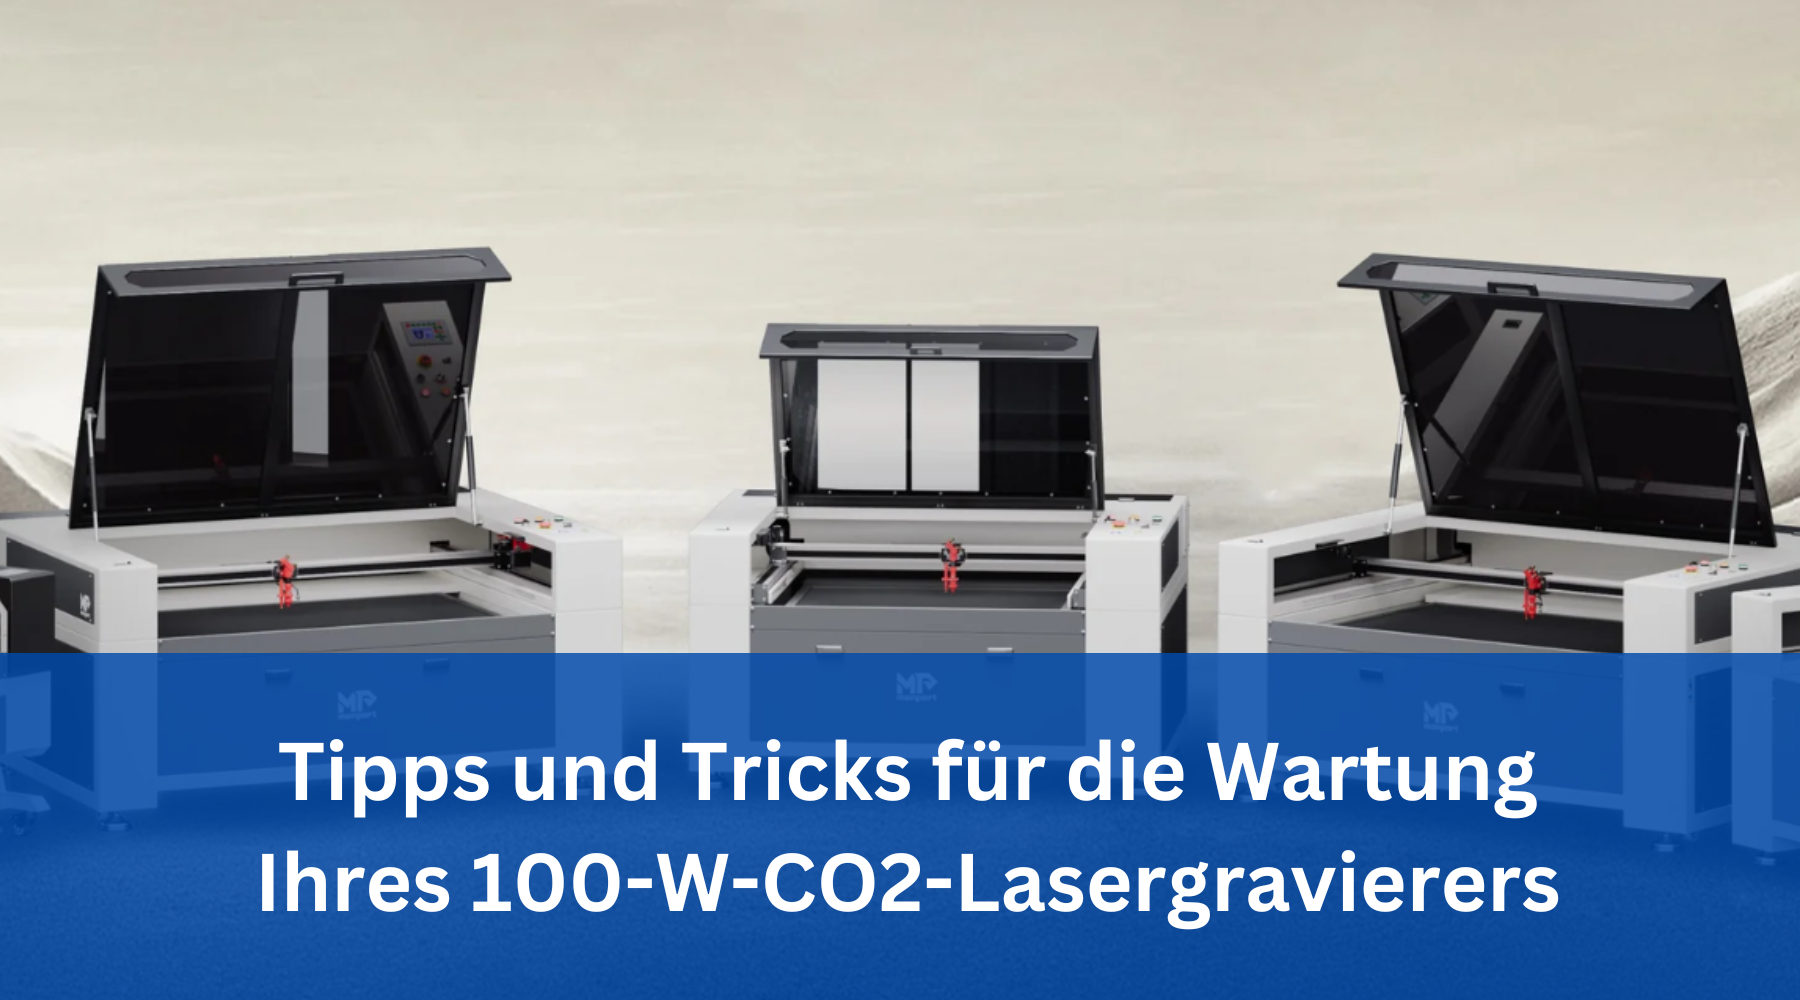 Tipps und Tricks für die Wartung Ihres 100-W-CO2-Lasergravierers